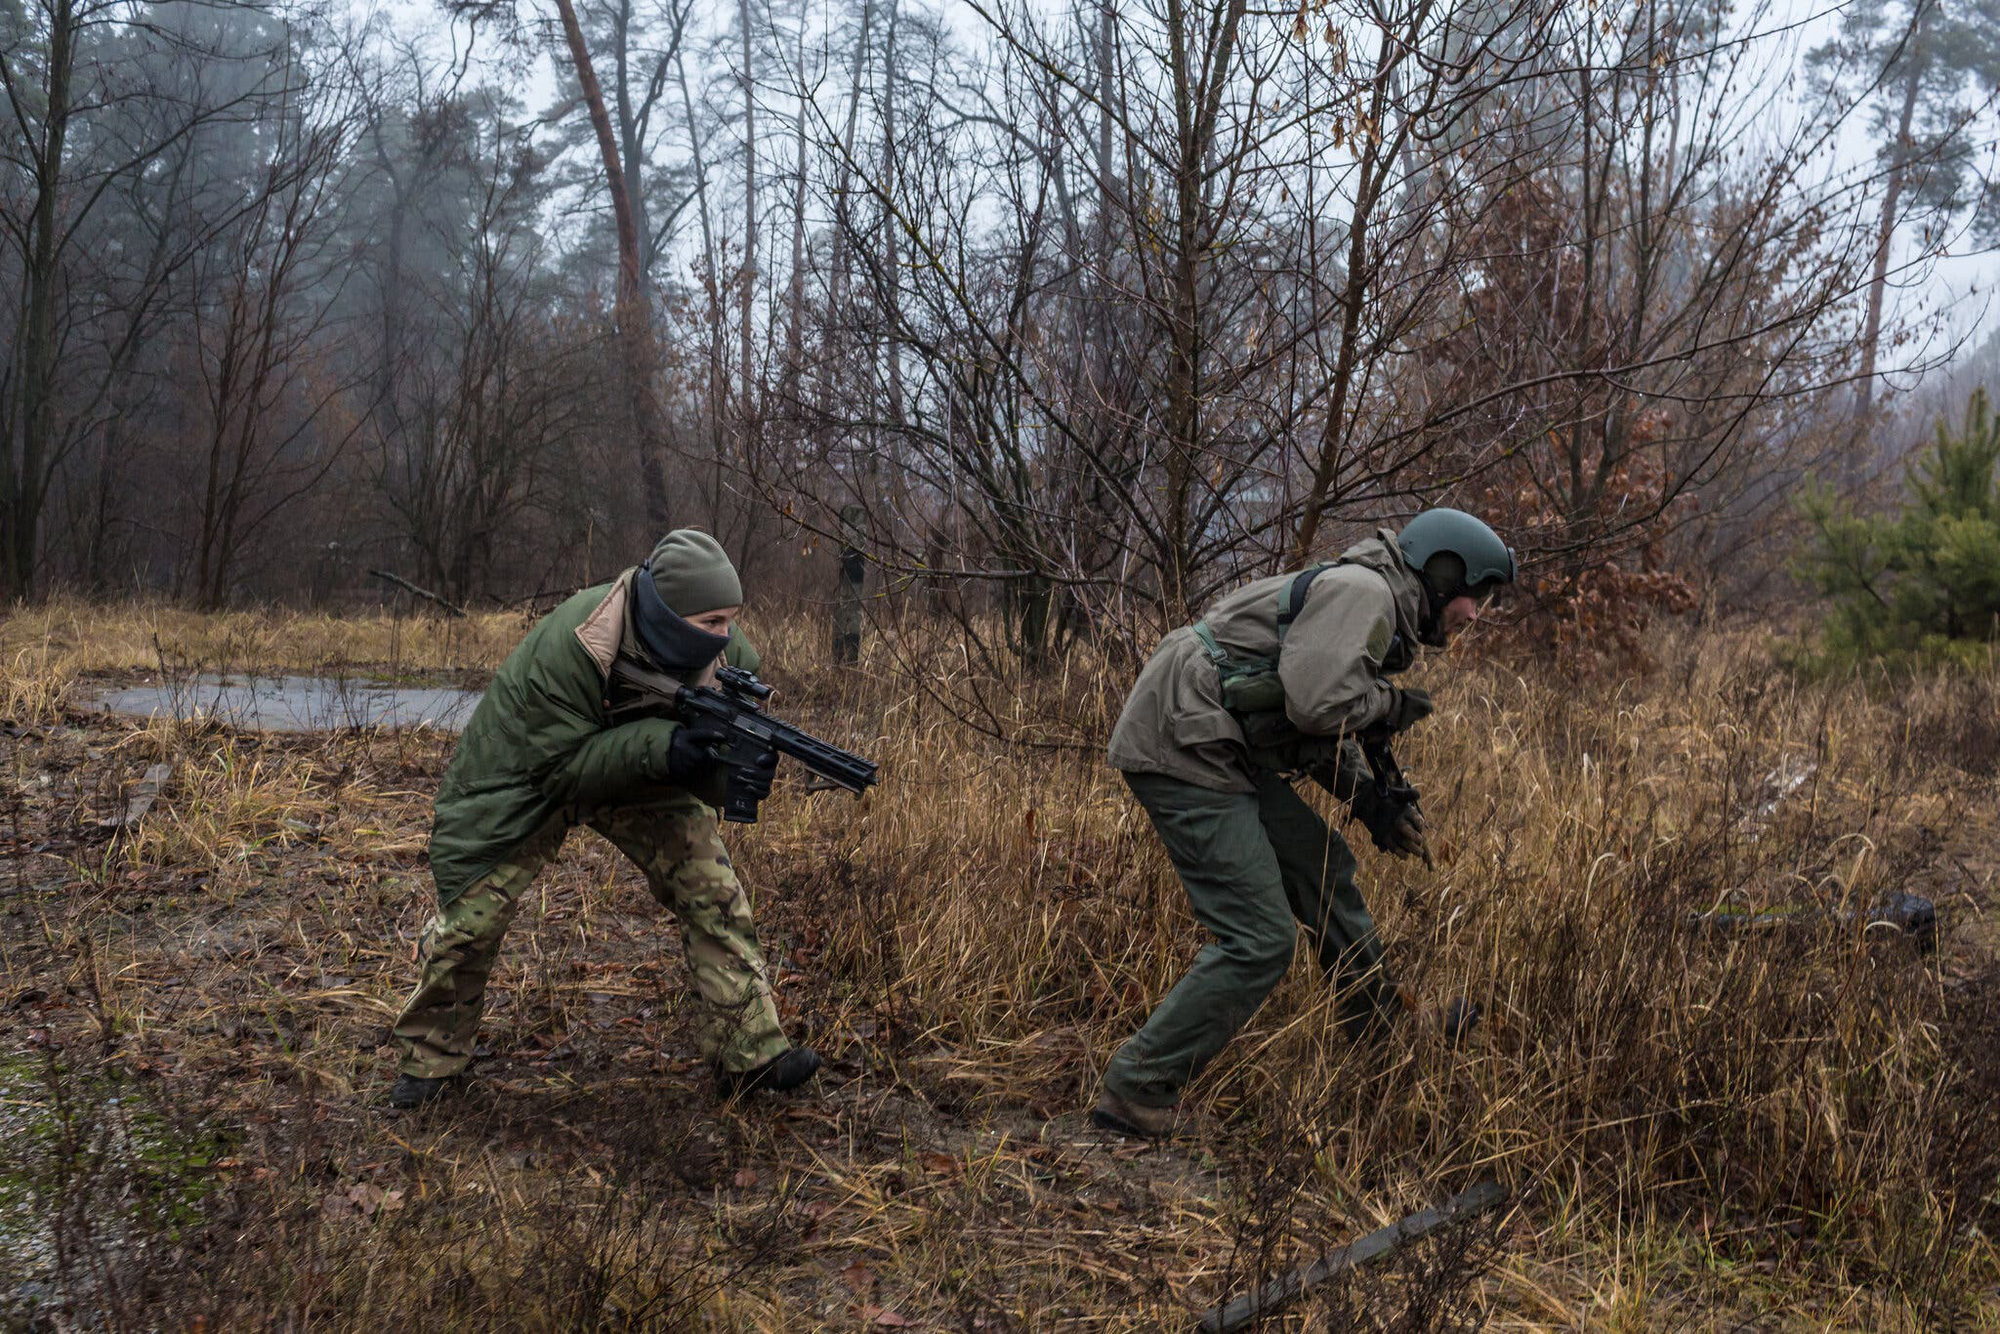 Ukraine ráo riết đào tạo 'đội quân du kích' cho xung đột quân sự với Nga - Ảnh 3.